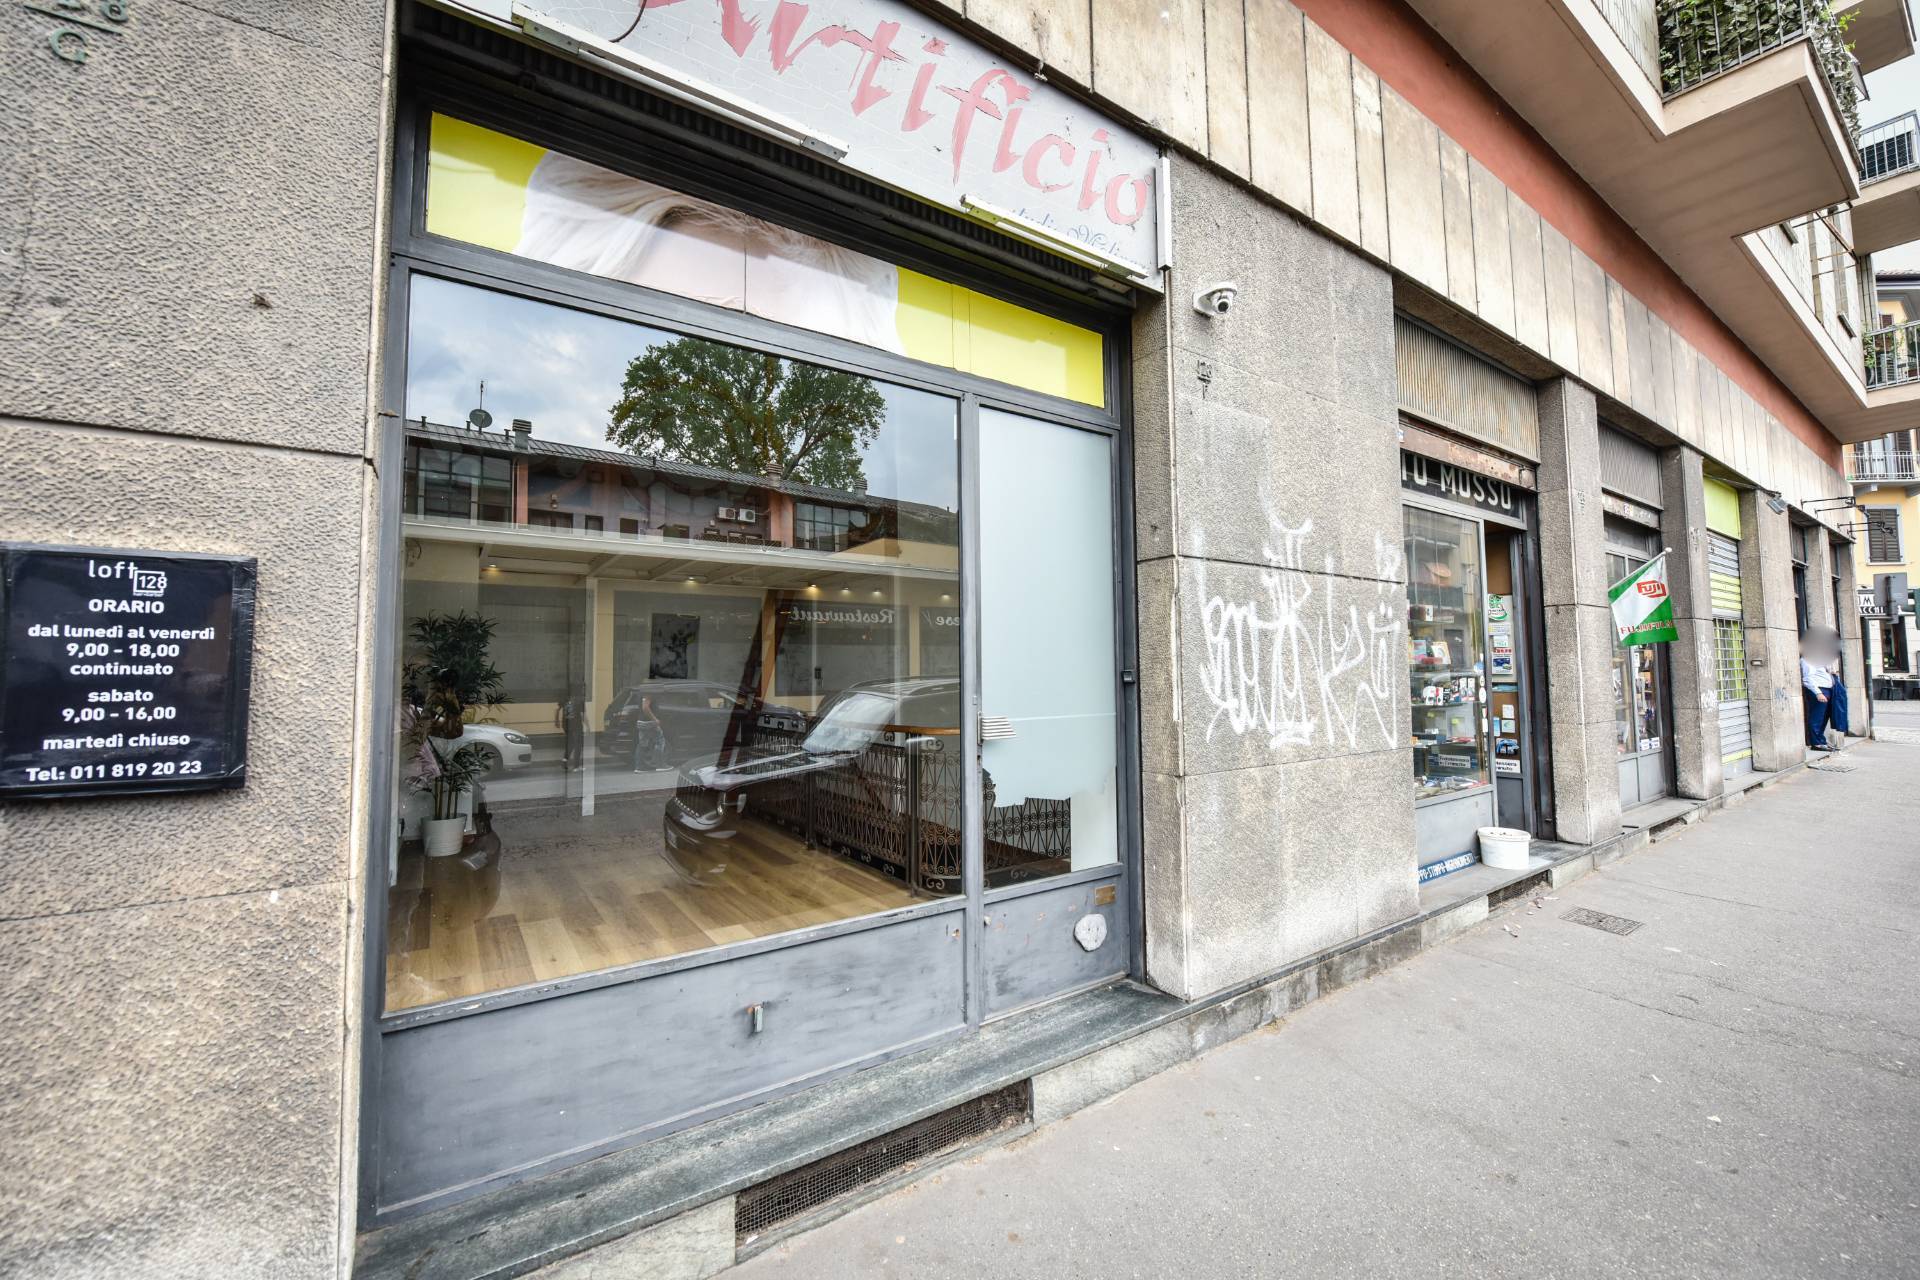 Locale commerciale in vendita, Torino madonna del pilone - sassi